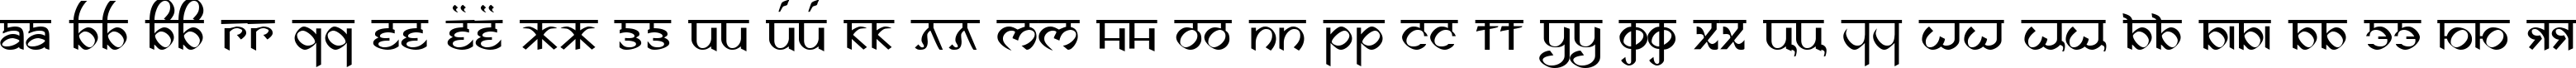 Пример написания русского алфавита шрифтом DS Izmir Normal